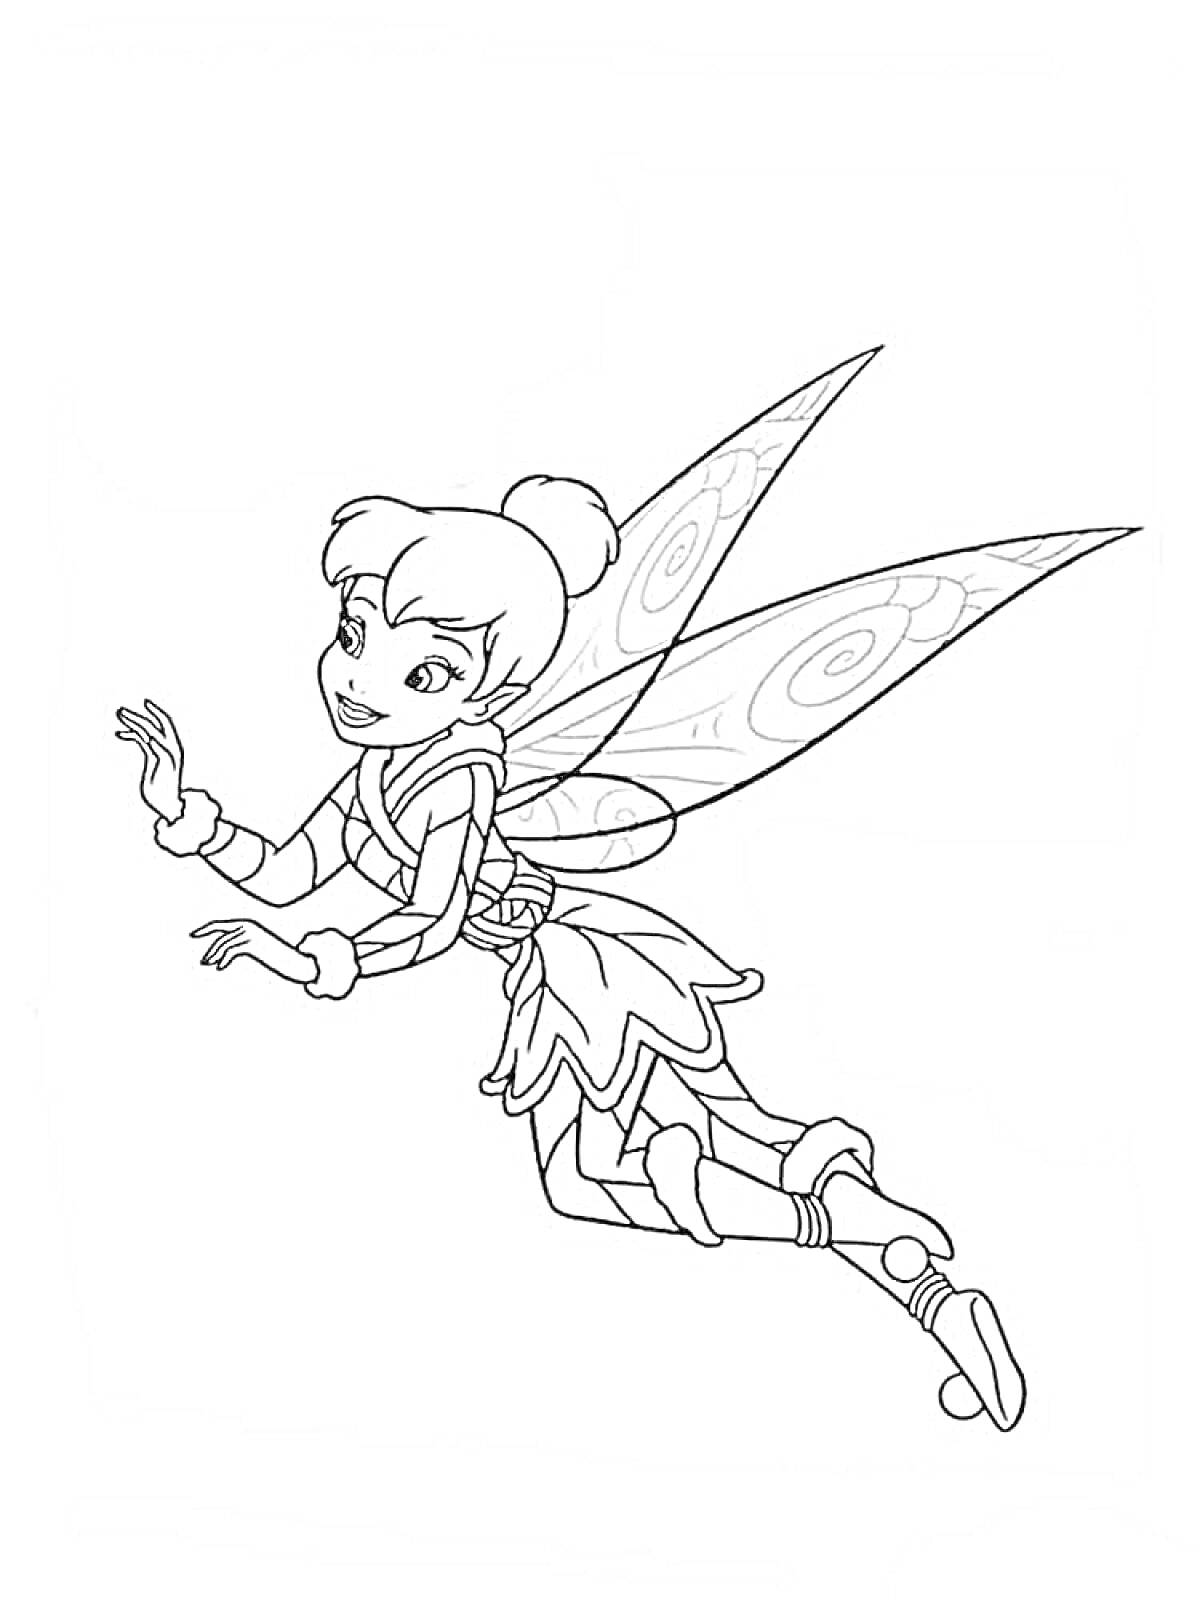 Раскраска Фея Динь-Динь в полете с крыльями, сложным костюмом и поднятой рукой